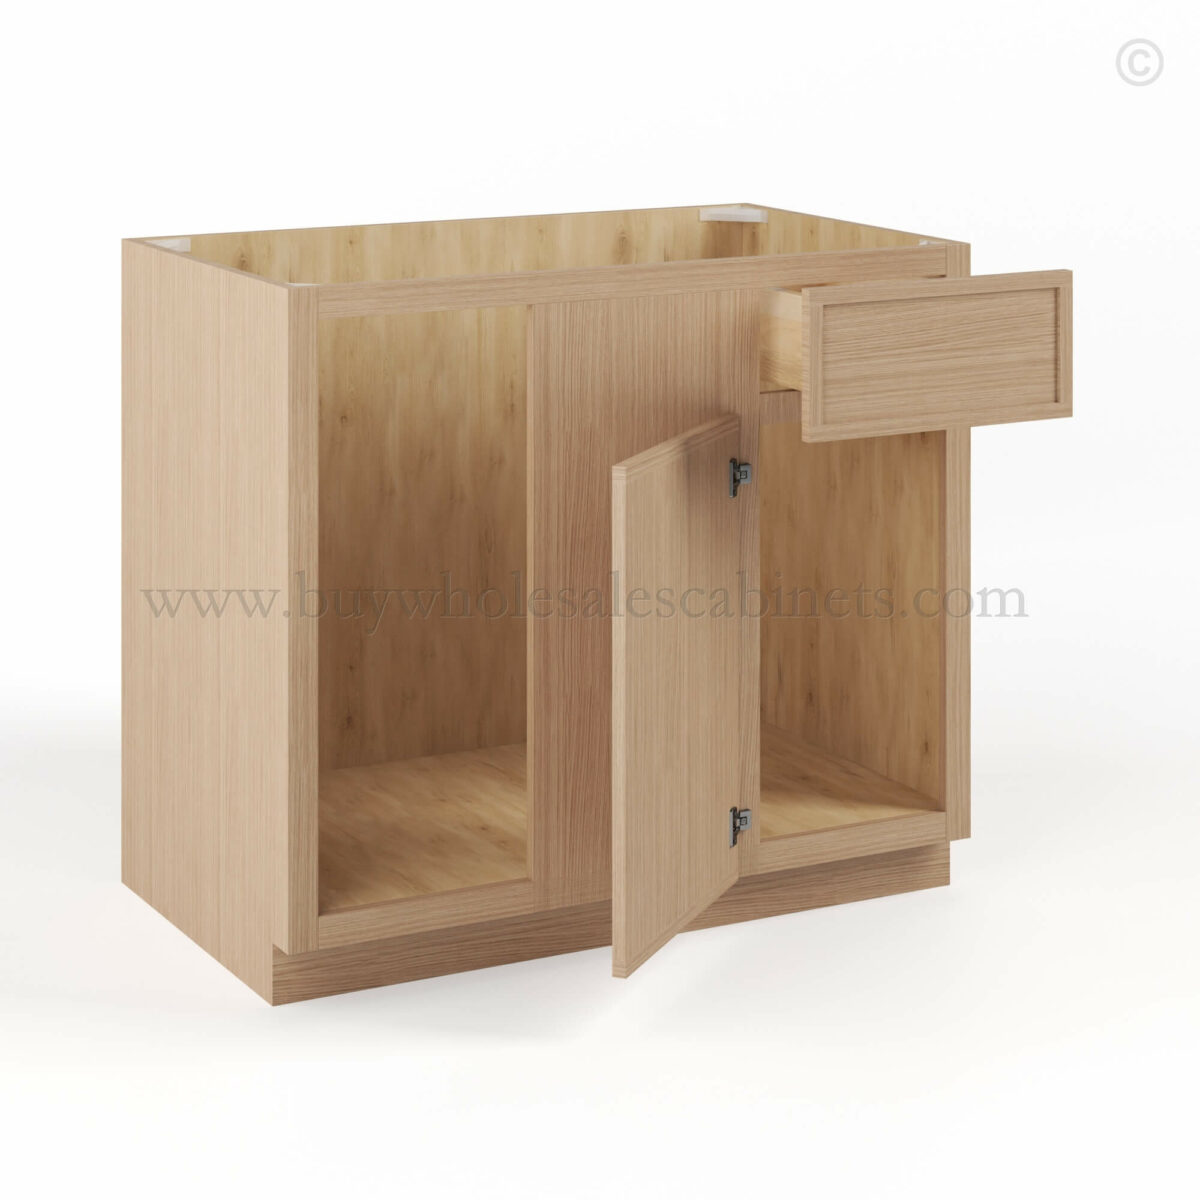 Slim Oak Shaker Blind Corner Base Cabinet, rta cabinets, wholesale cabinets